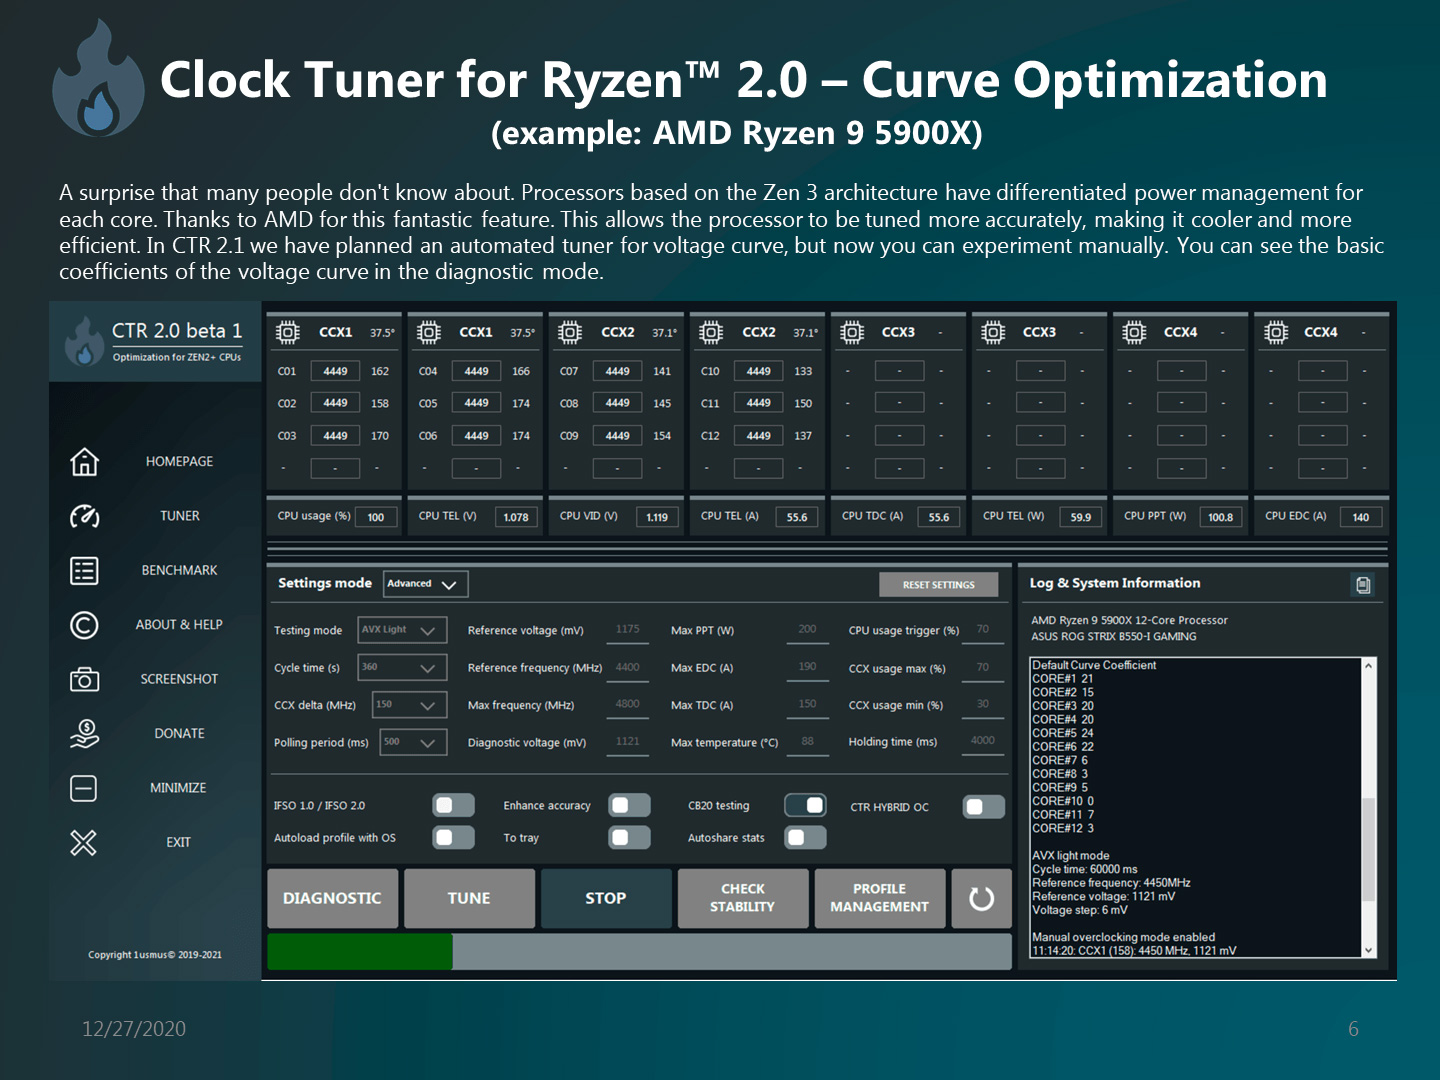 Clock Tuner for Ryzen (CTR) обновлен до версии 2.0. Добавлена поддержка Ryzen 5000